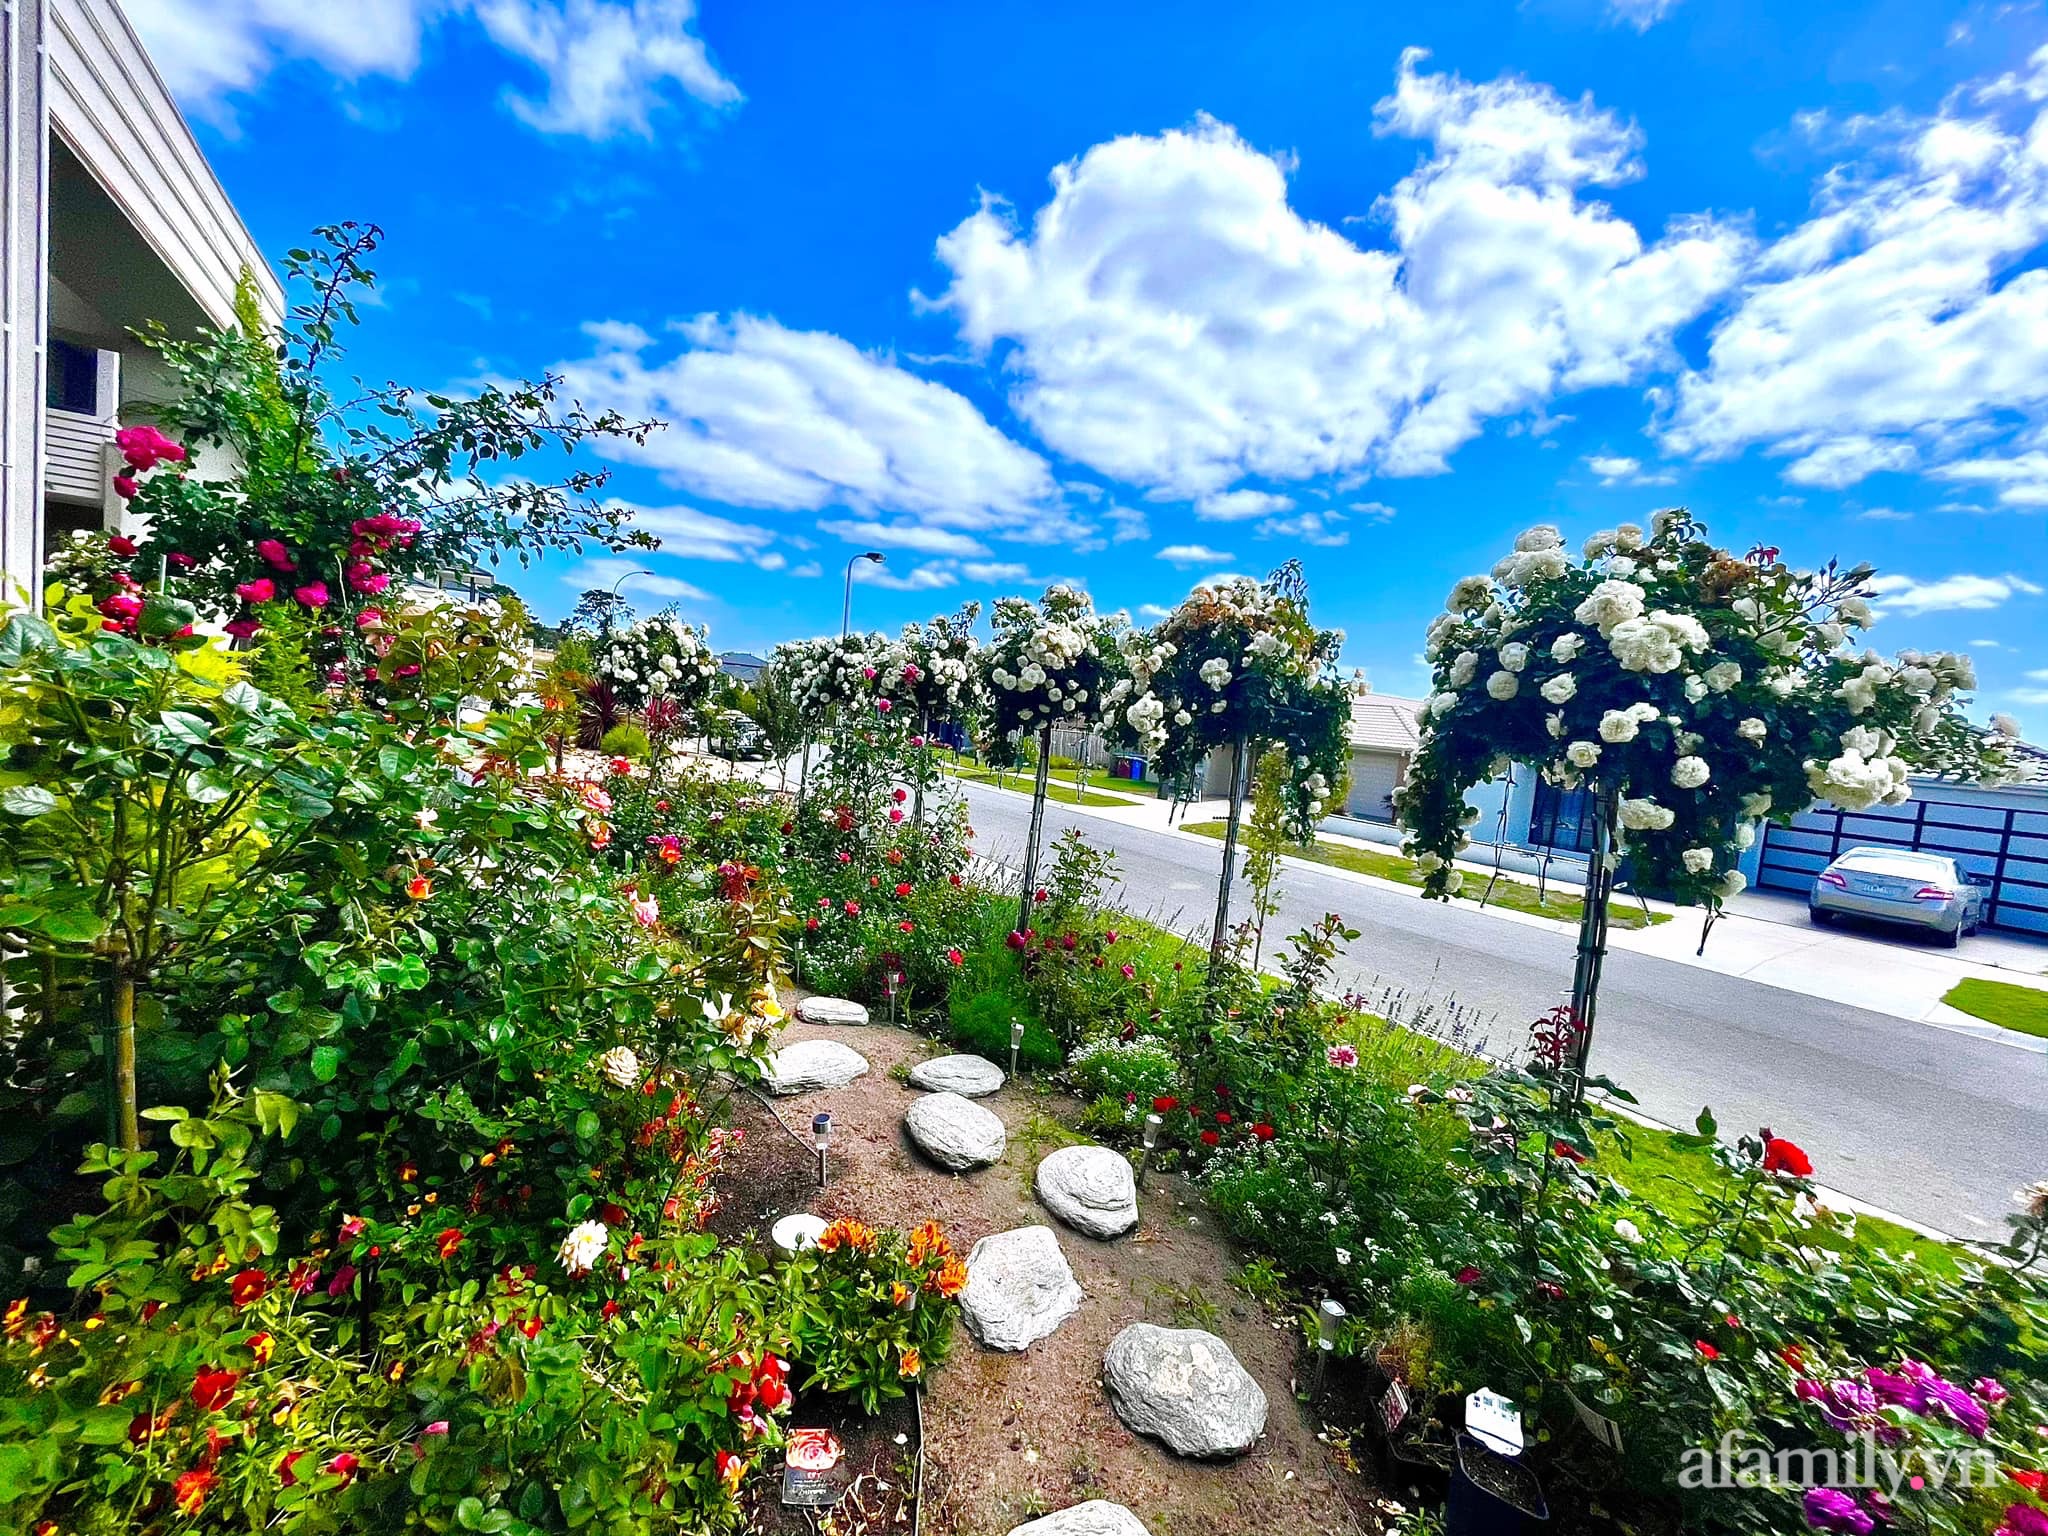 Vườn hồng 250m² ngát hương rực rỡ sắc màu đẹp như cổ tích của mẹ Việt ở Úc - Ảnh 2.